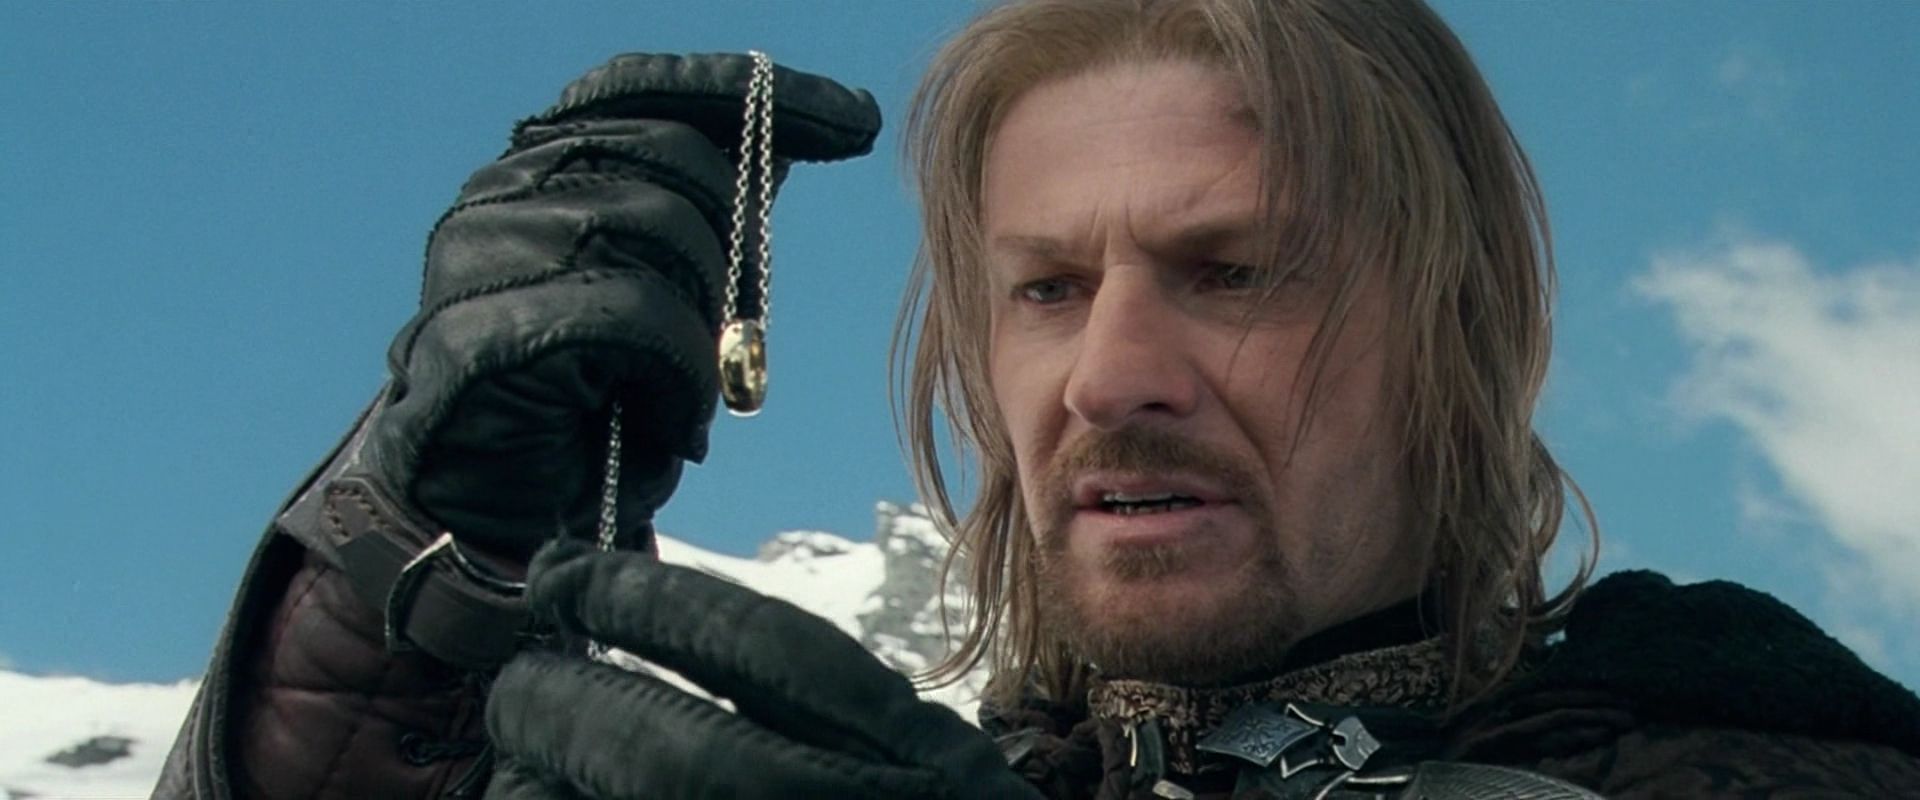 Boromir holds the ring